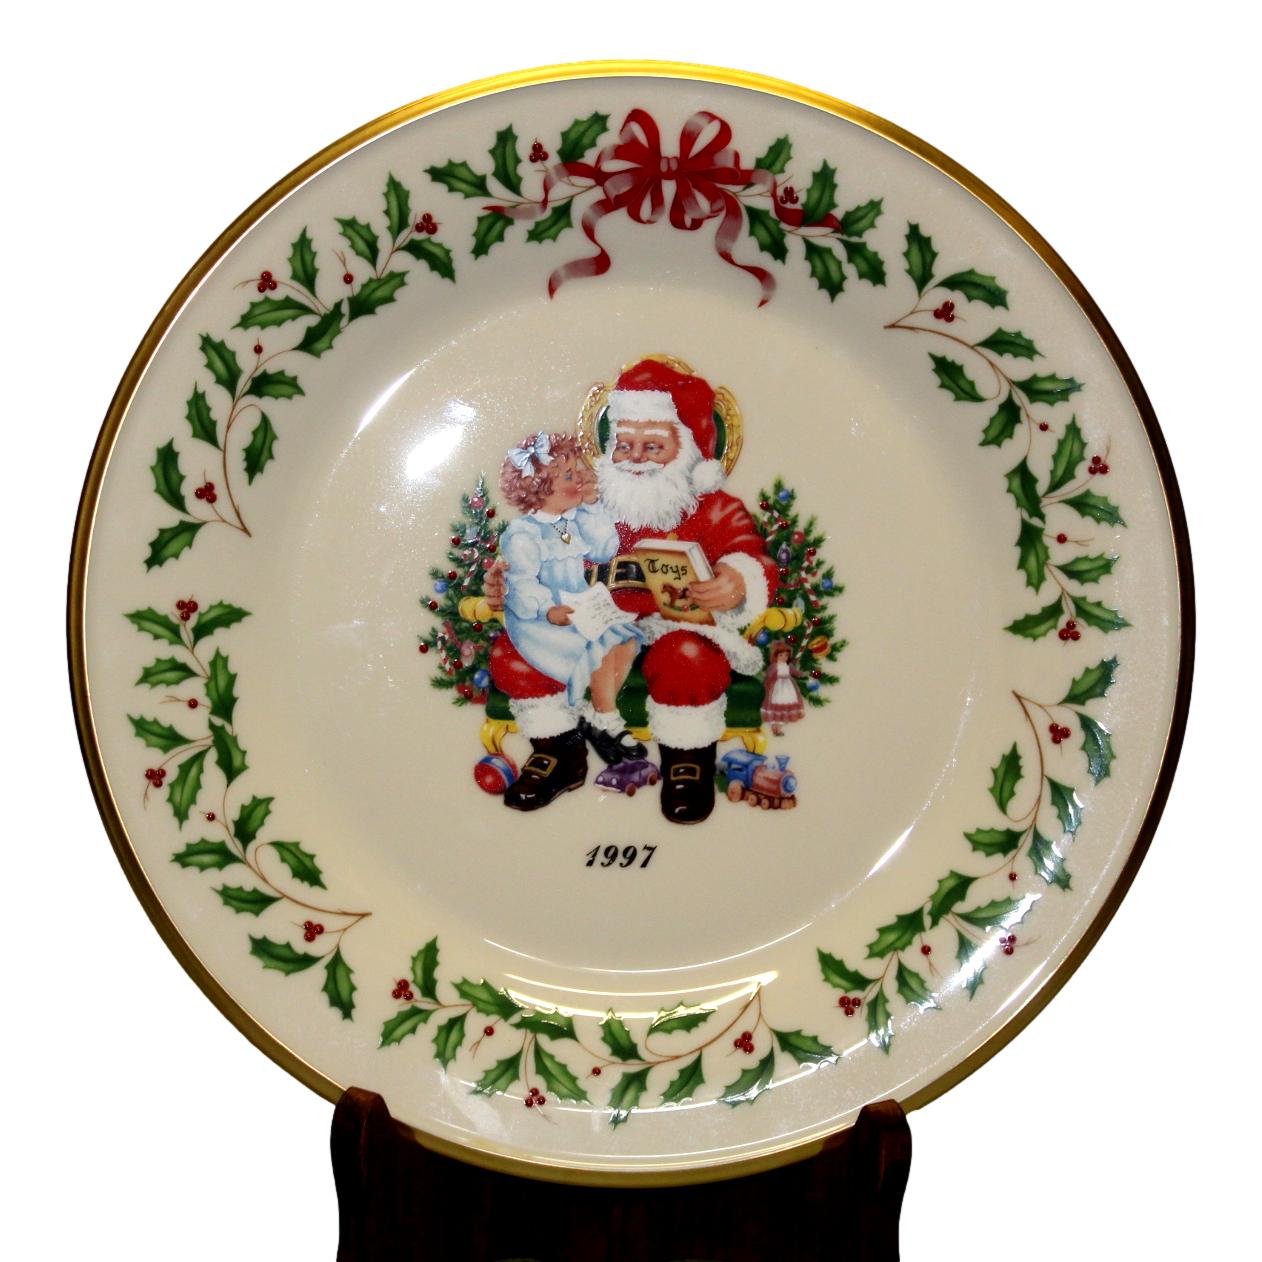 1997 Christmas Plate